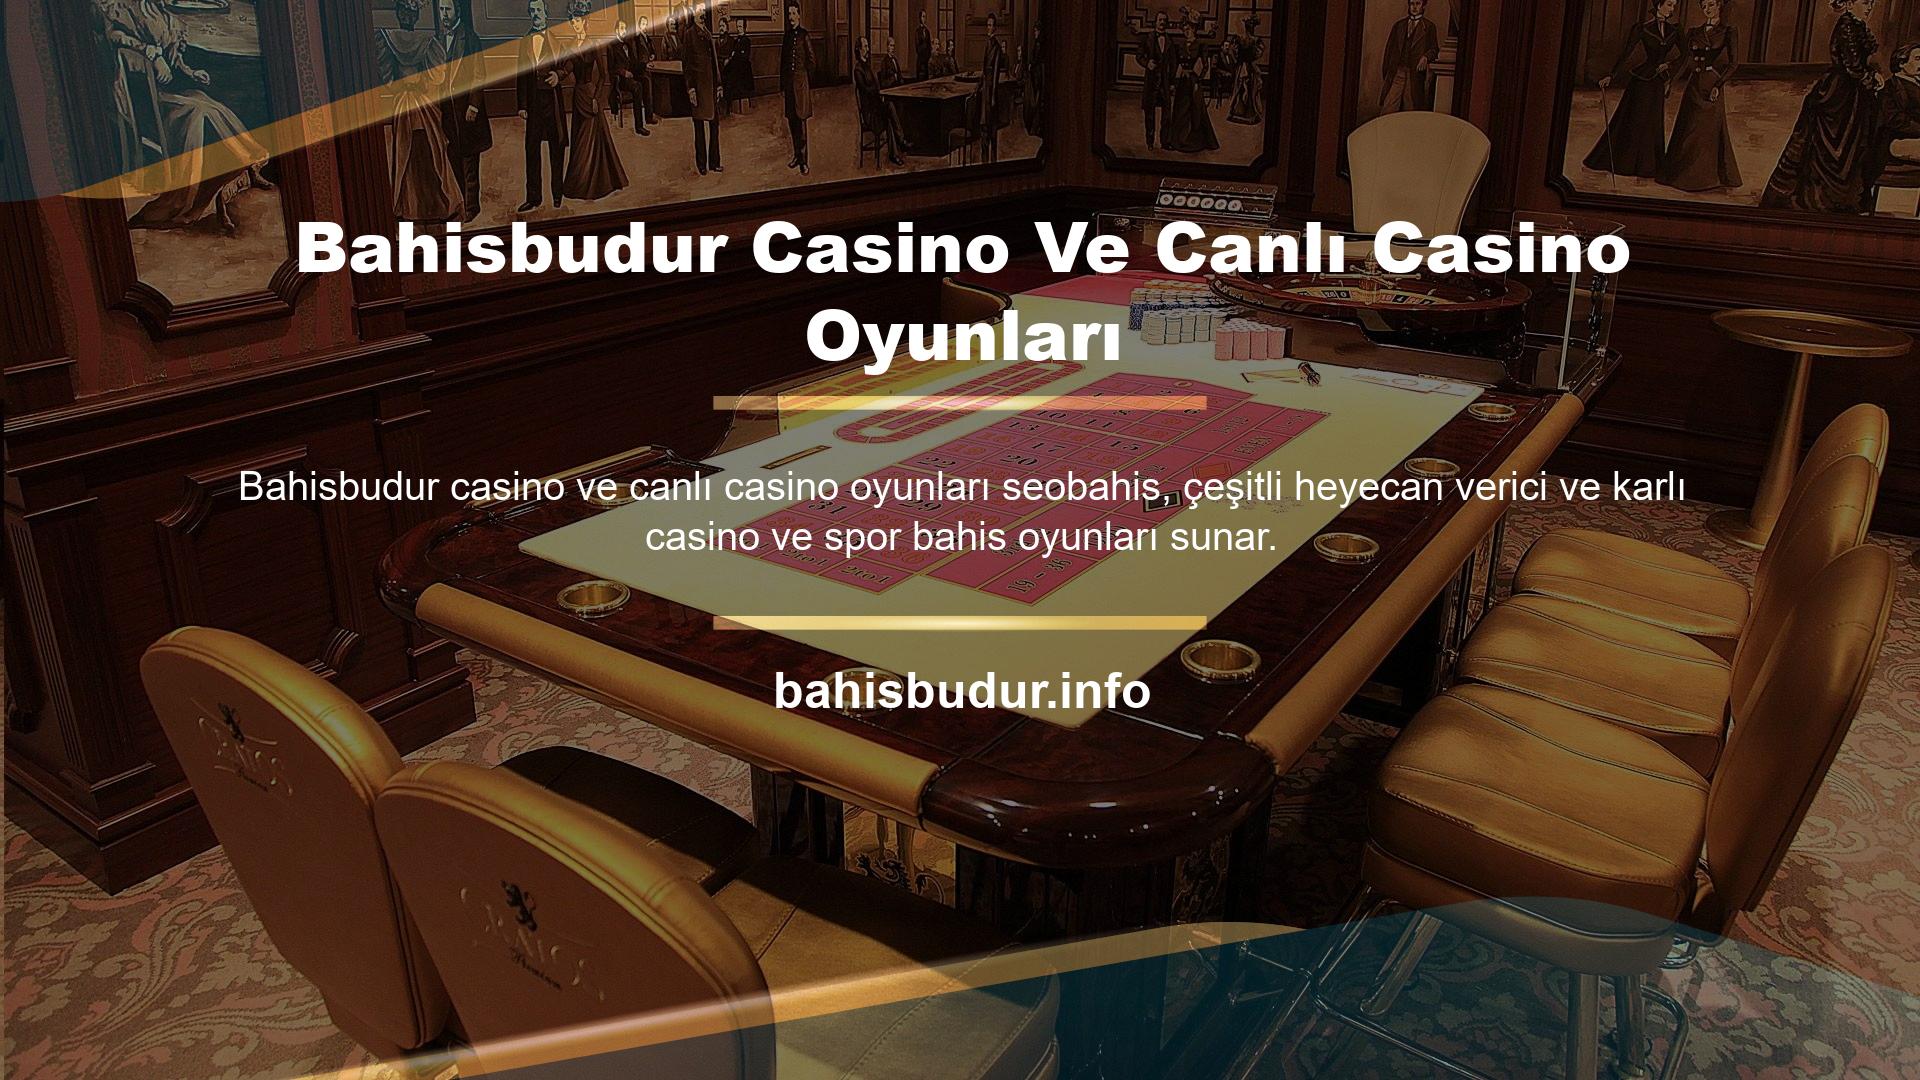 Bahisbudur web sitesi, canlı casino ve casino altyapı ortakları ile oldukça sağlam bir altyapıya sahiptir